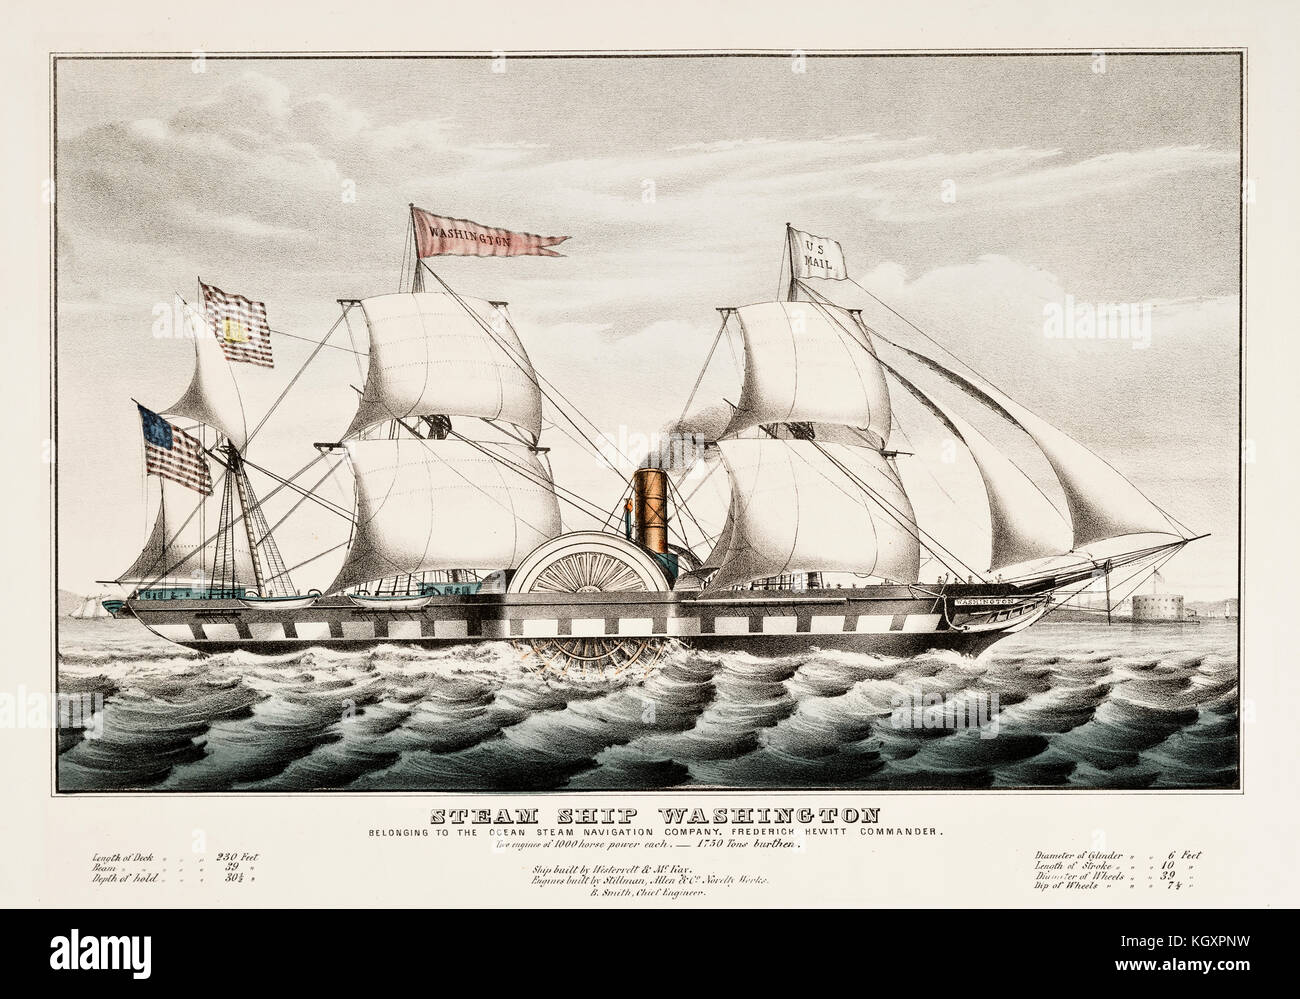 Ilustración del viejo barco de vapor en Washington. Por Currier, publ. en Nueva York, 1847 Foto de stock